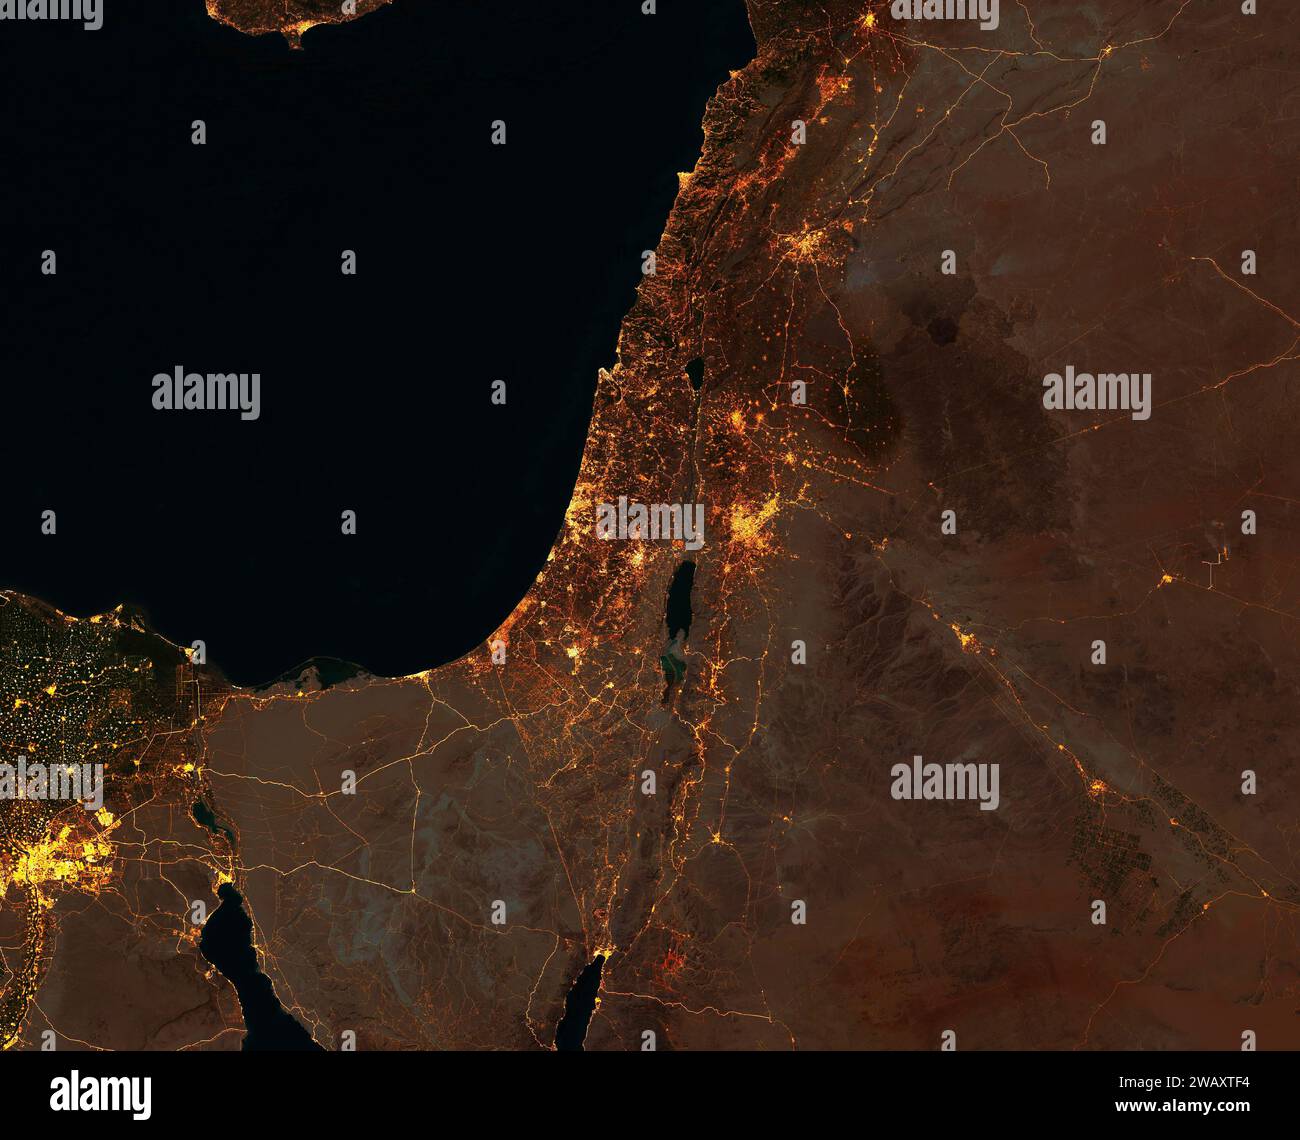 Satellitenansicht von Israel, Gazastreifen, Westjordanland, Libanon, Syrien, Jordanien und Ägypten. Stadt- und Straßenlaternen. NASA-Elemente Stockfoto